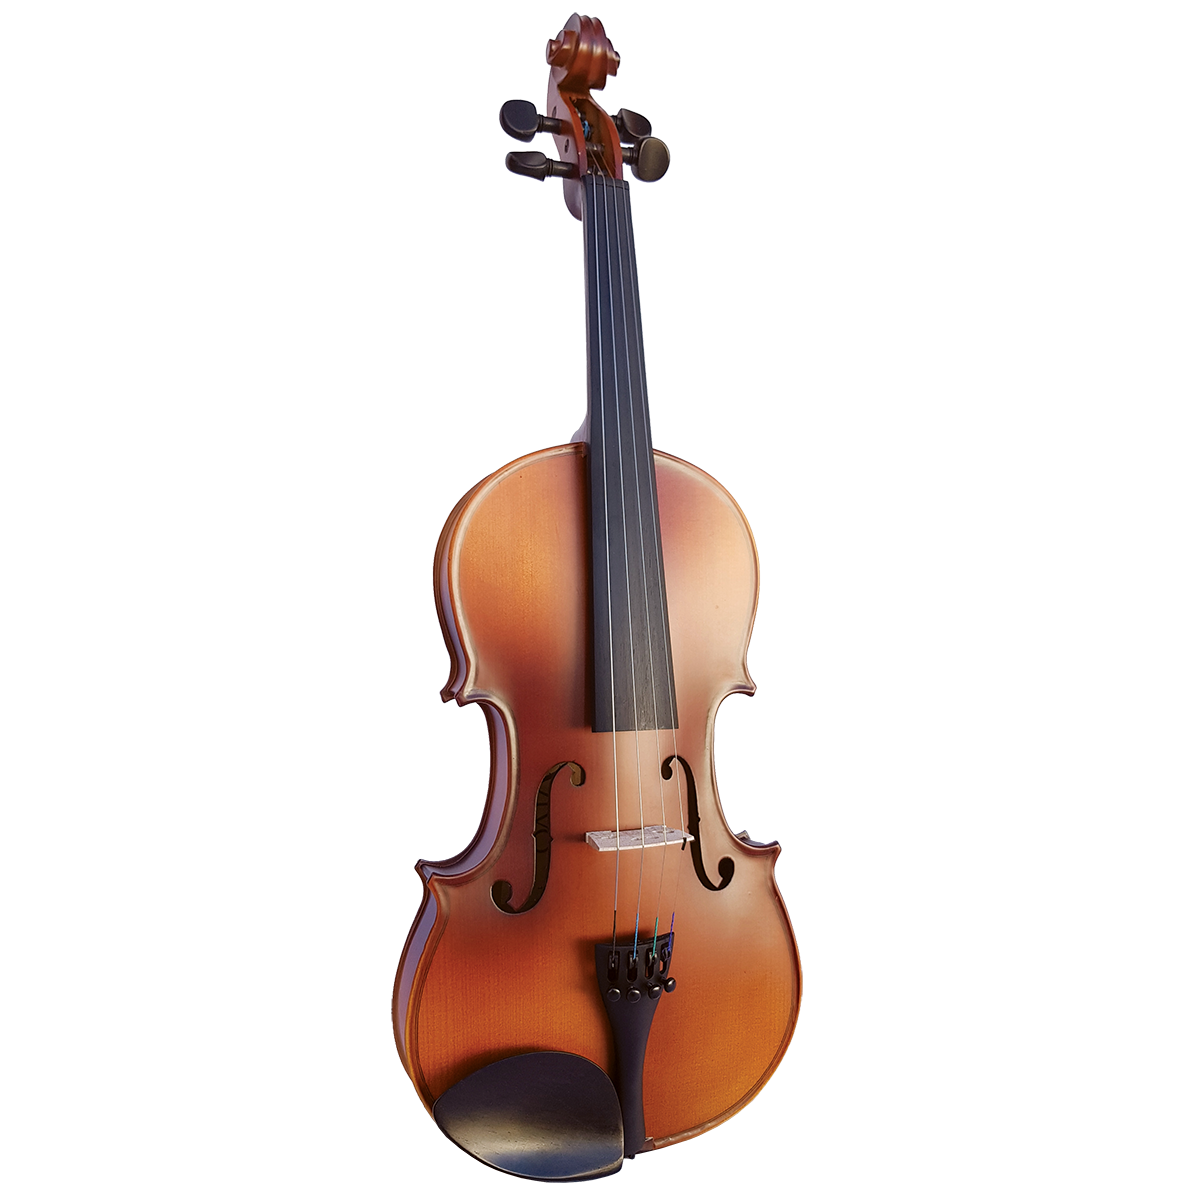 Violin Instrument Transparent Images